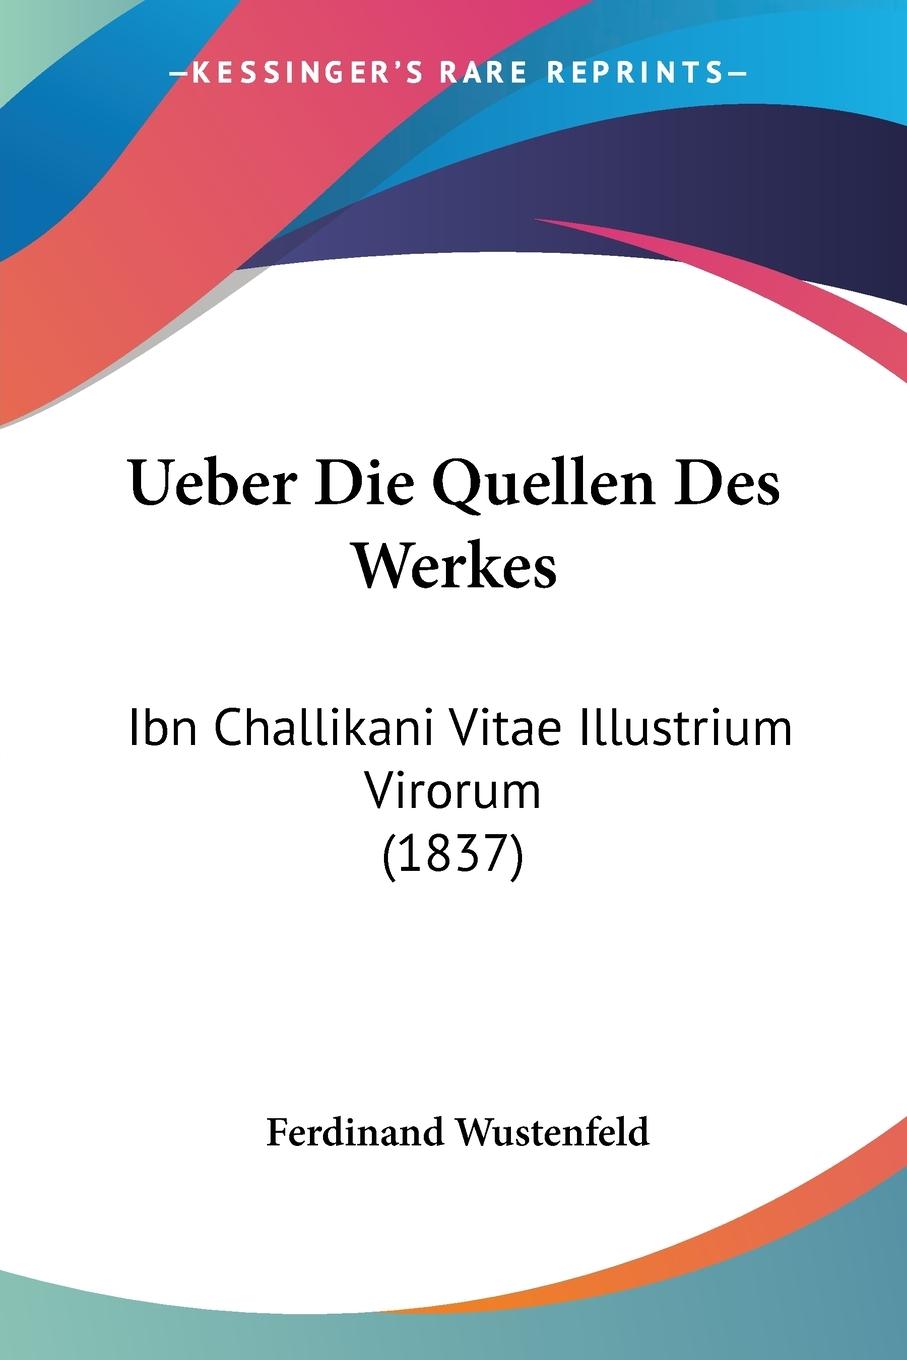 Ueber Die Quellen Des Werkes - Wustenfeld, Ferdinand